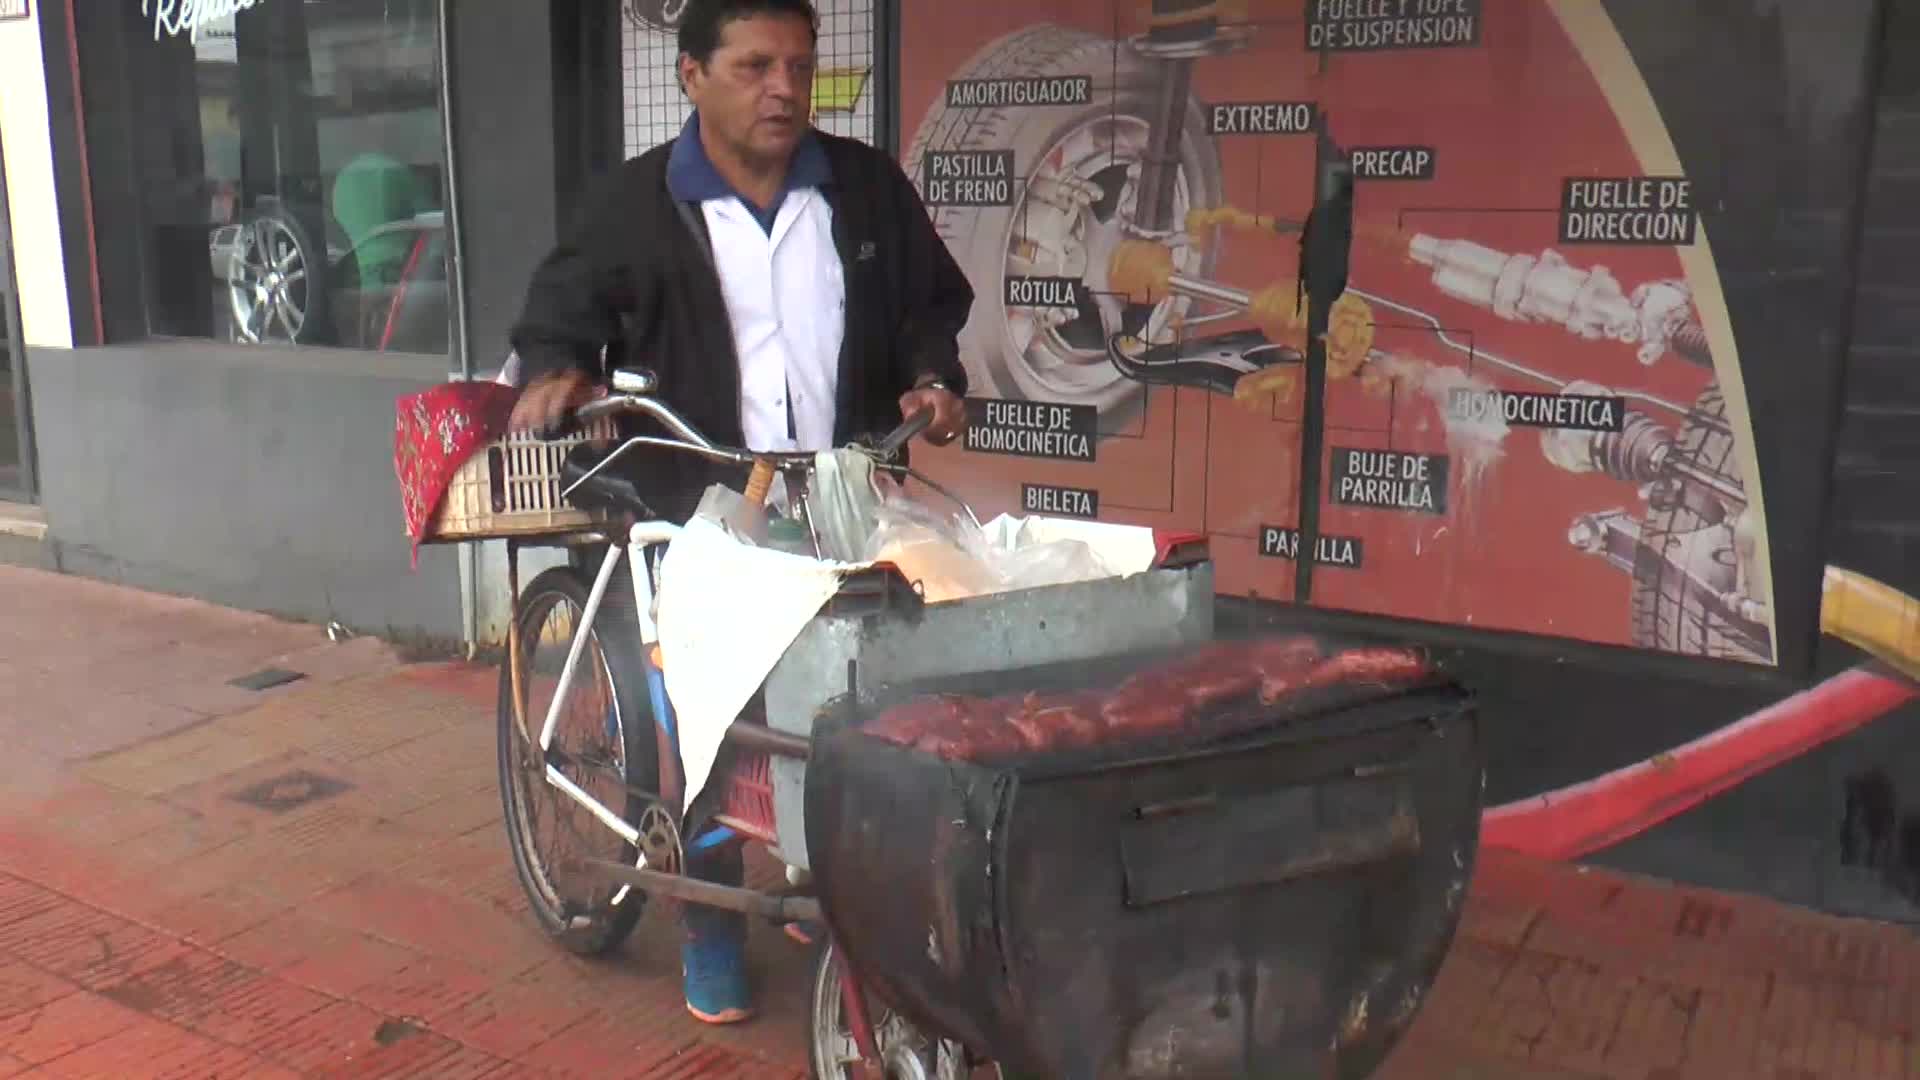 La otra cara de la crisis: montó una parrilla en su bicicleta para vender choripán